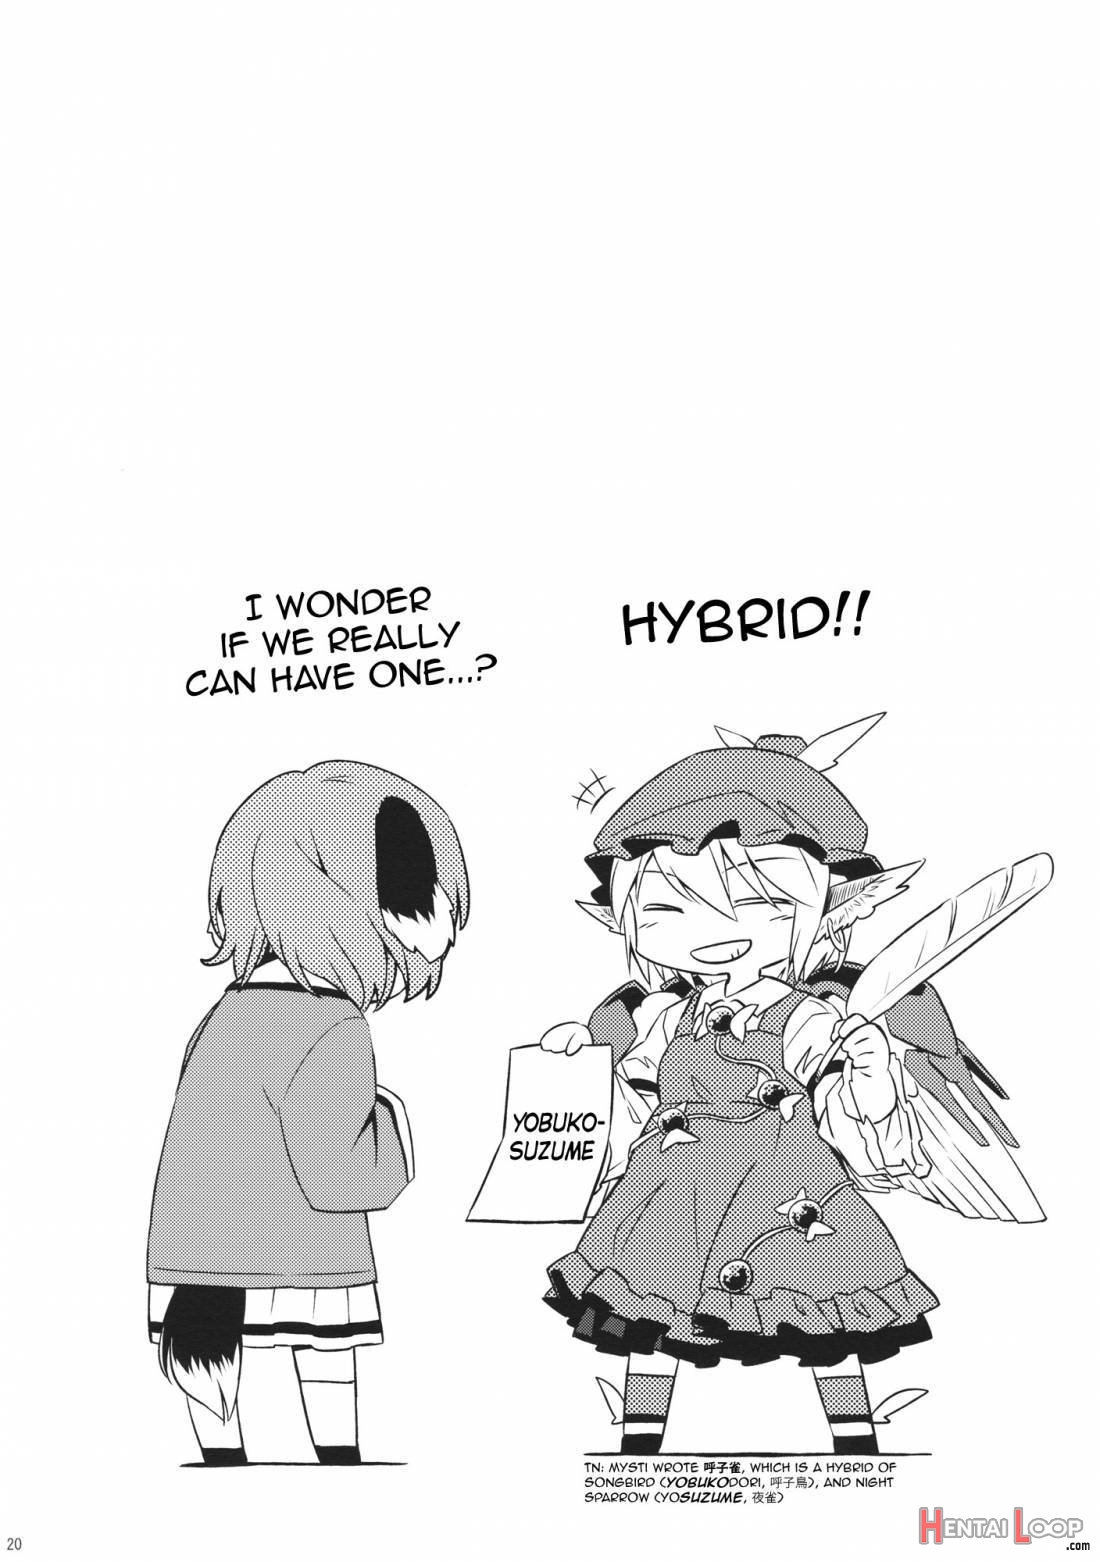 Yobukodori Hybrid page 18